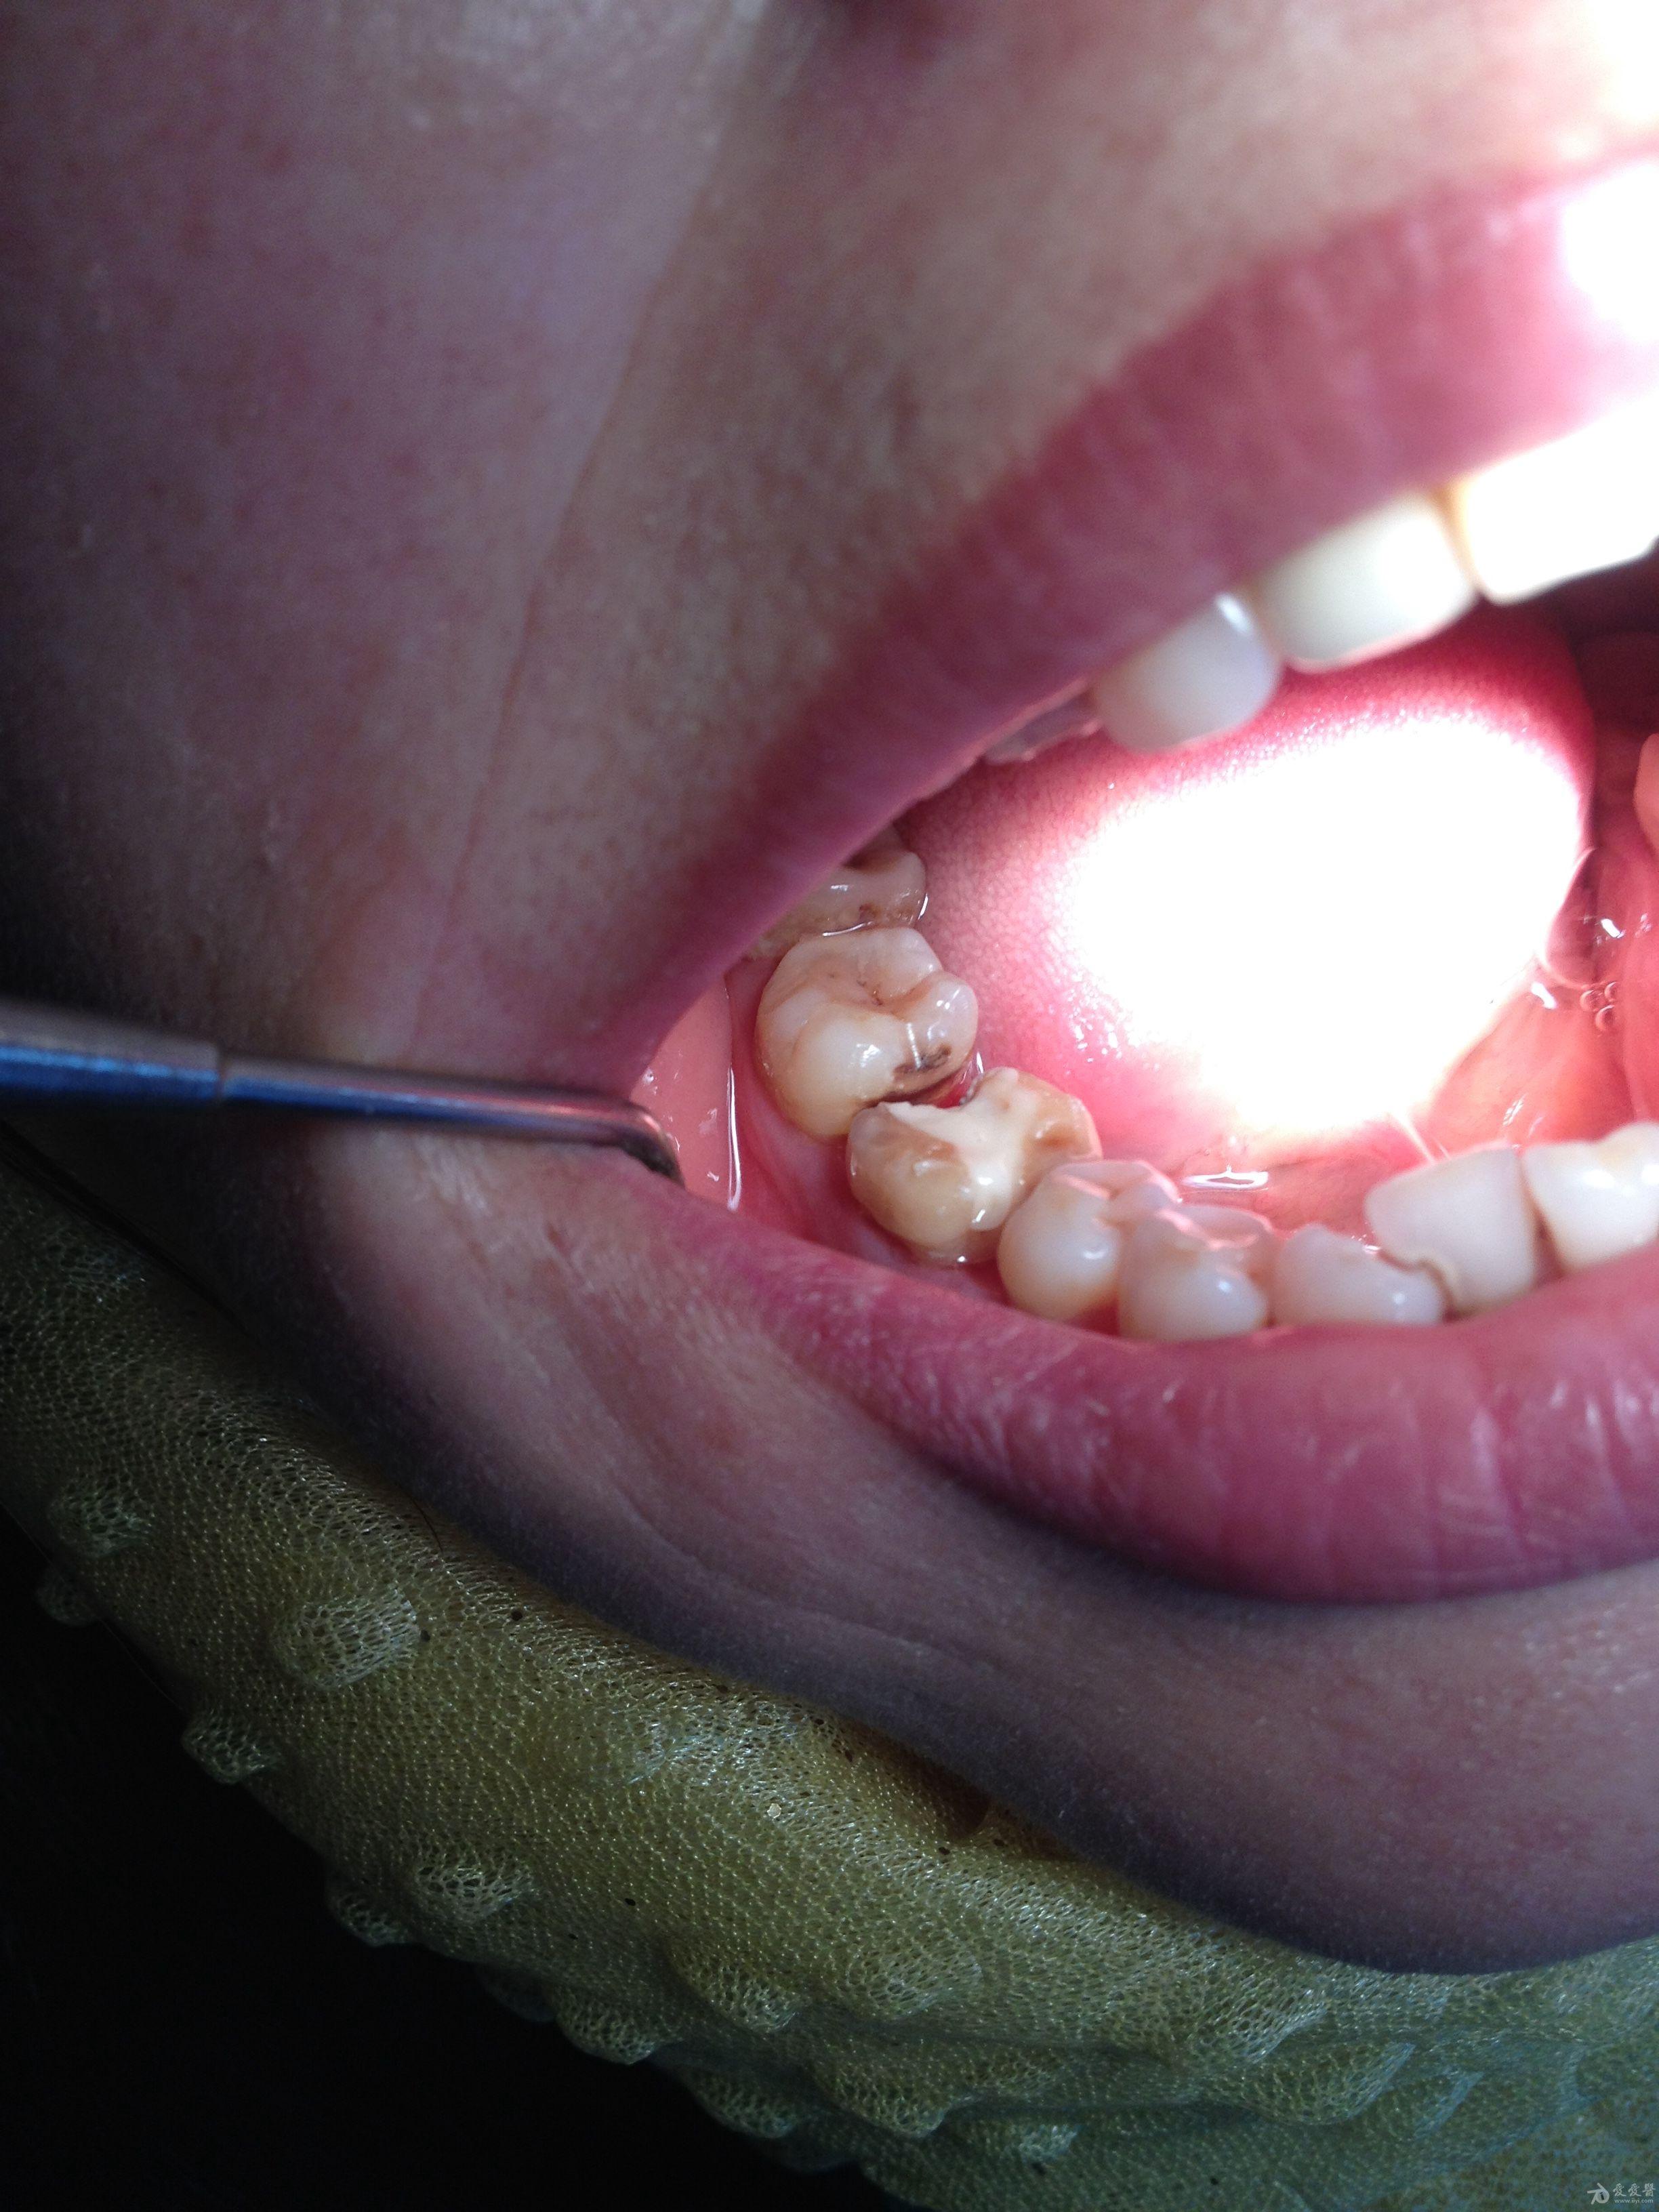 牙隐裂导致牙纵裂后修复成功一例